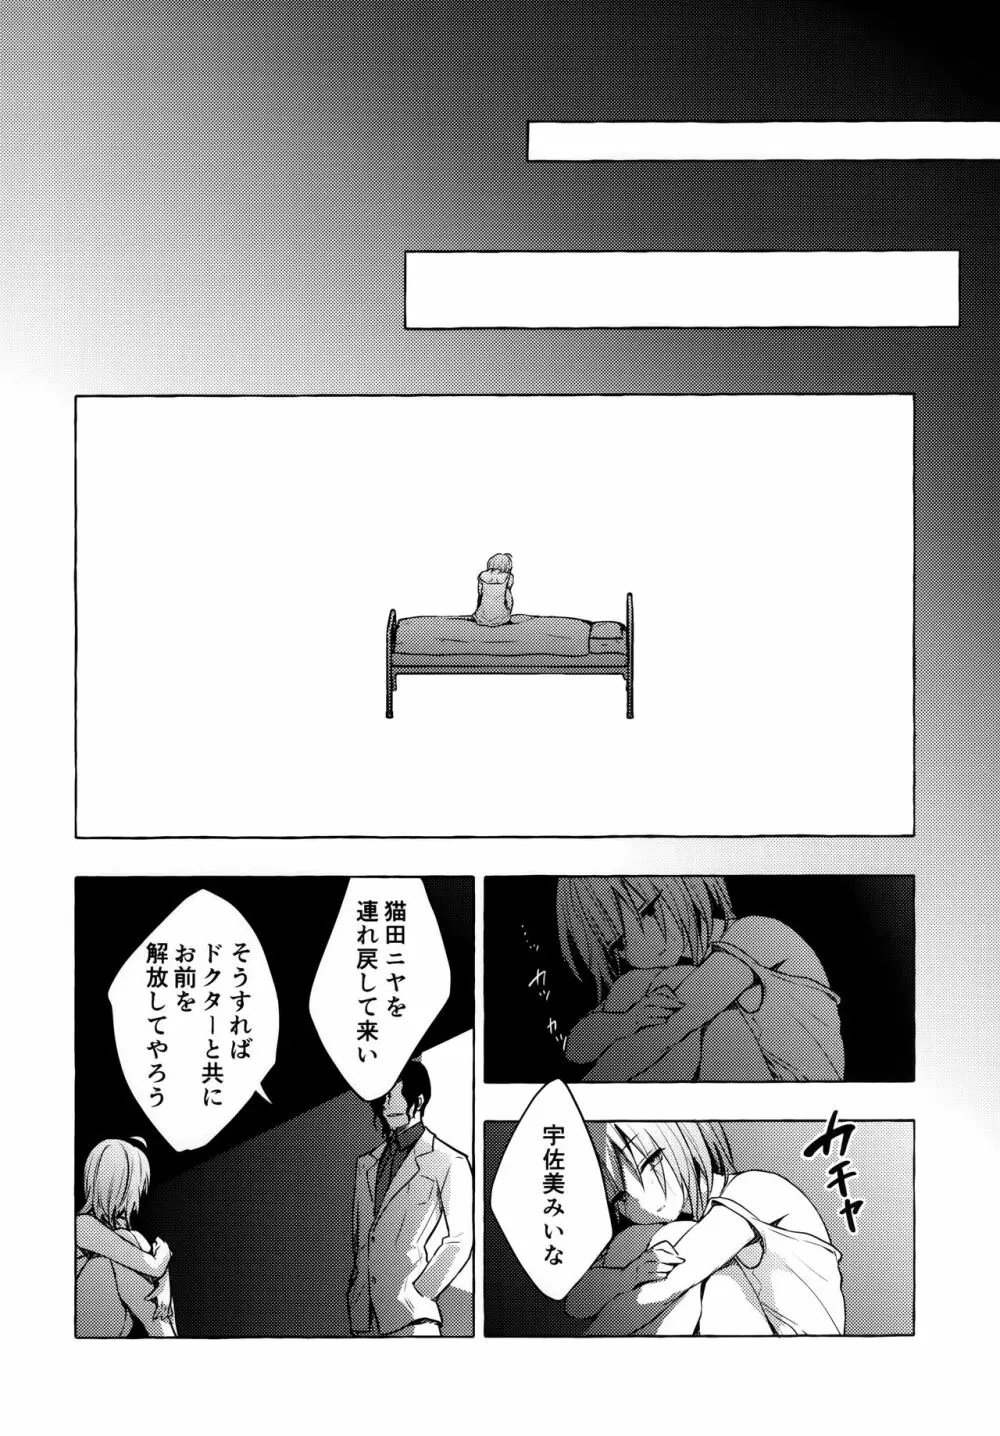 ニャンコロジ10 -宇佐美さんと秘密の研究生活- - page49